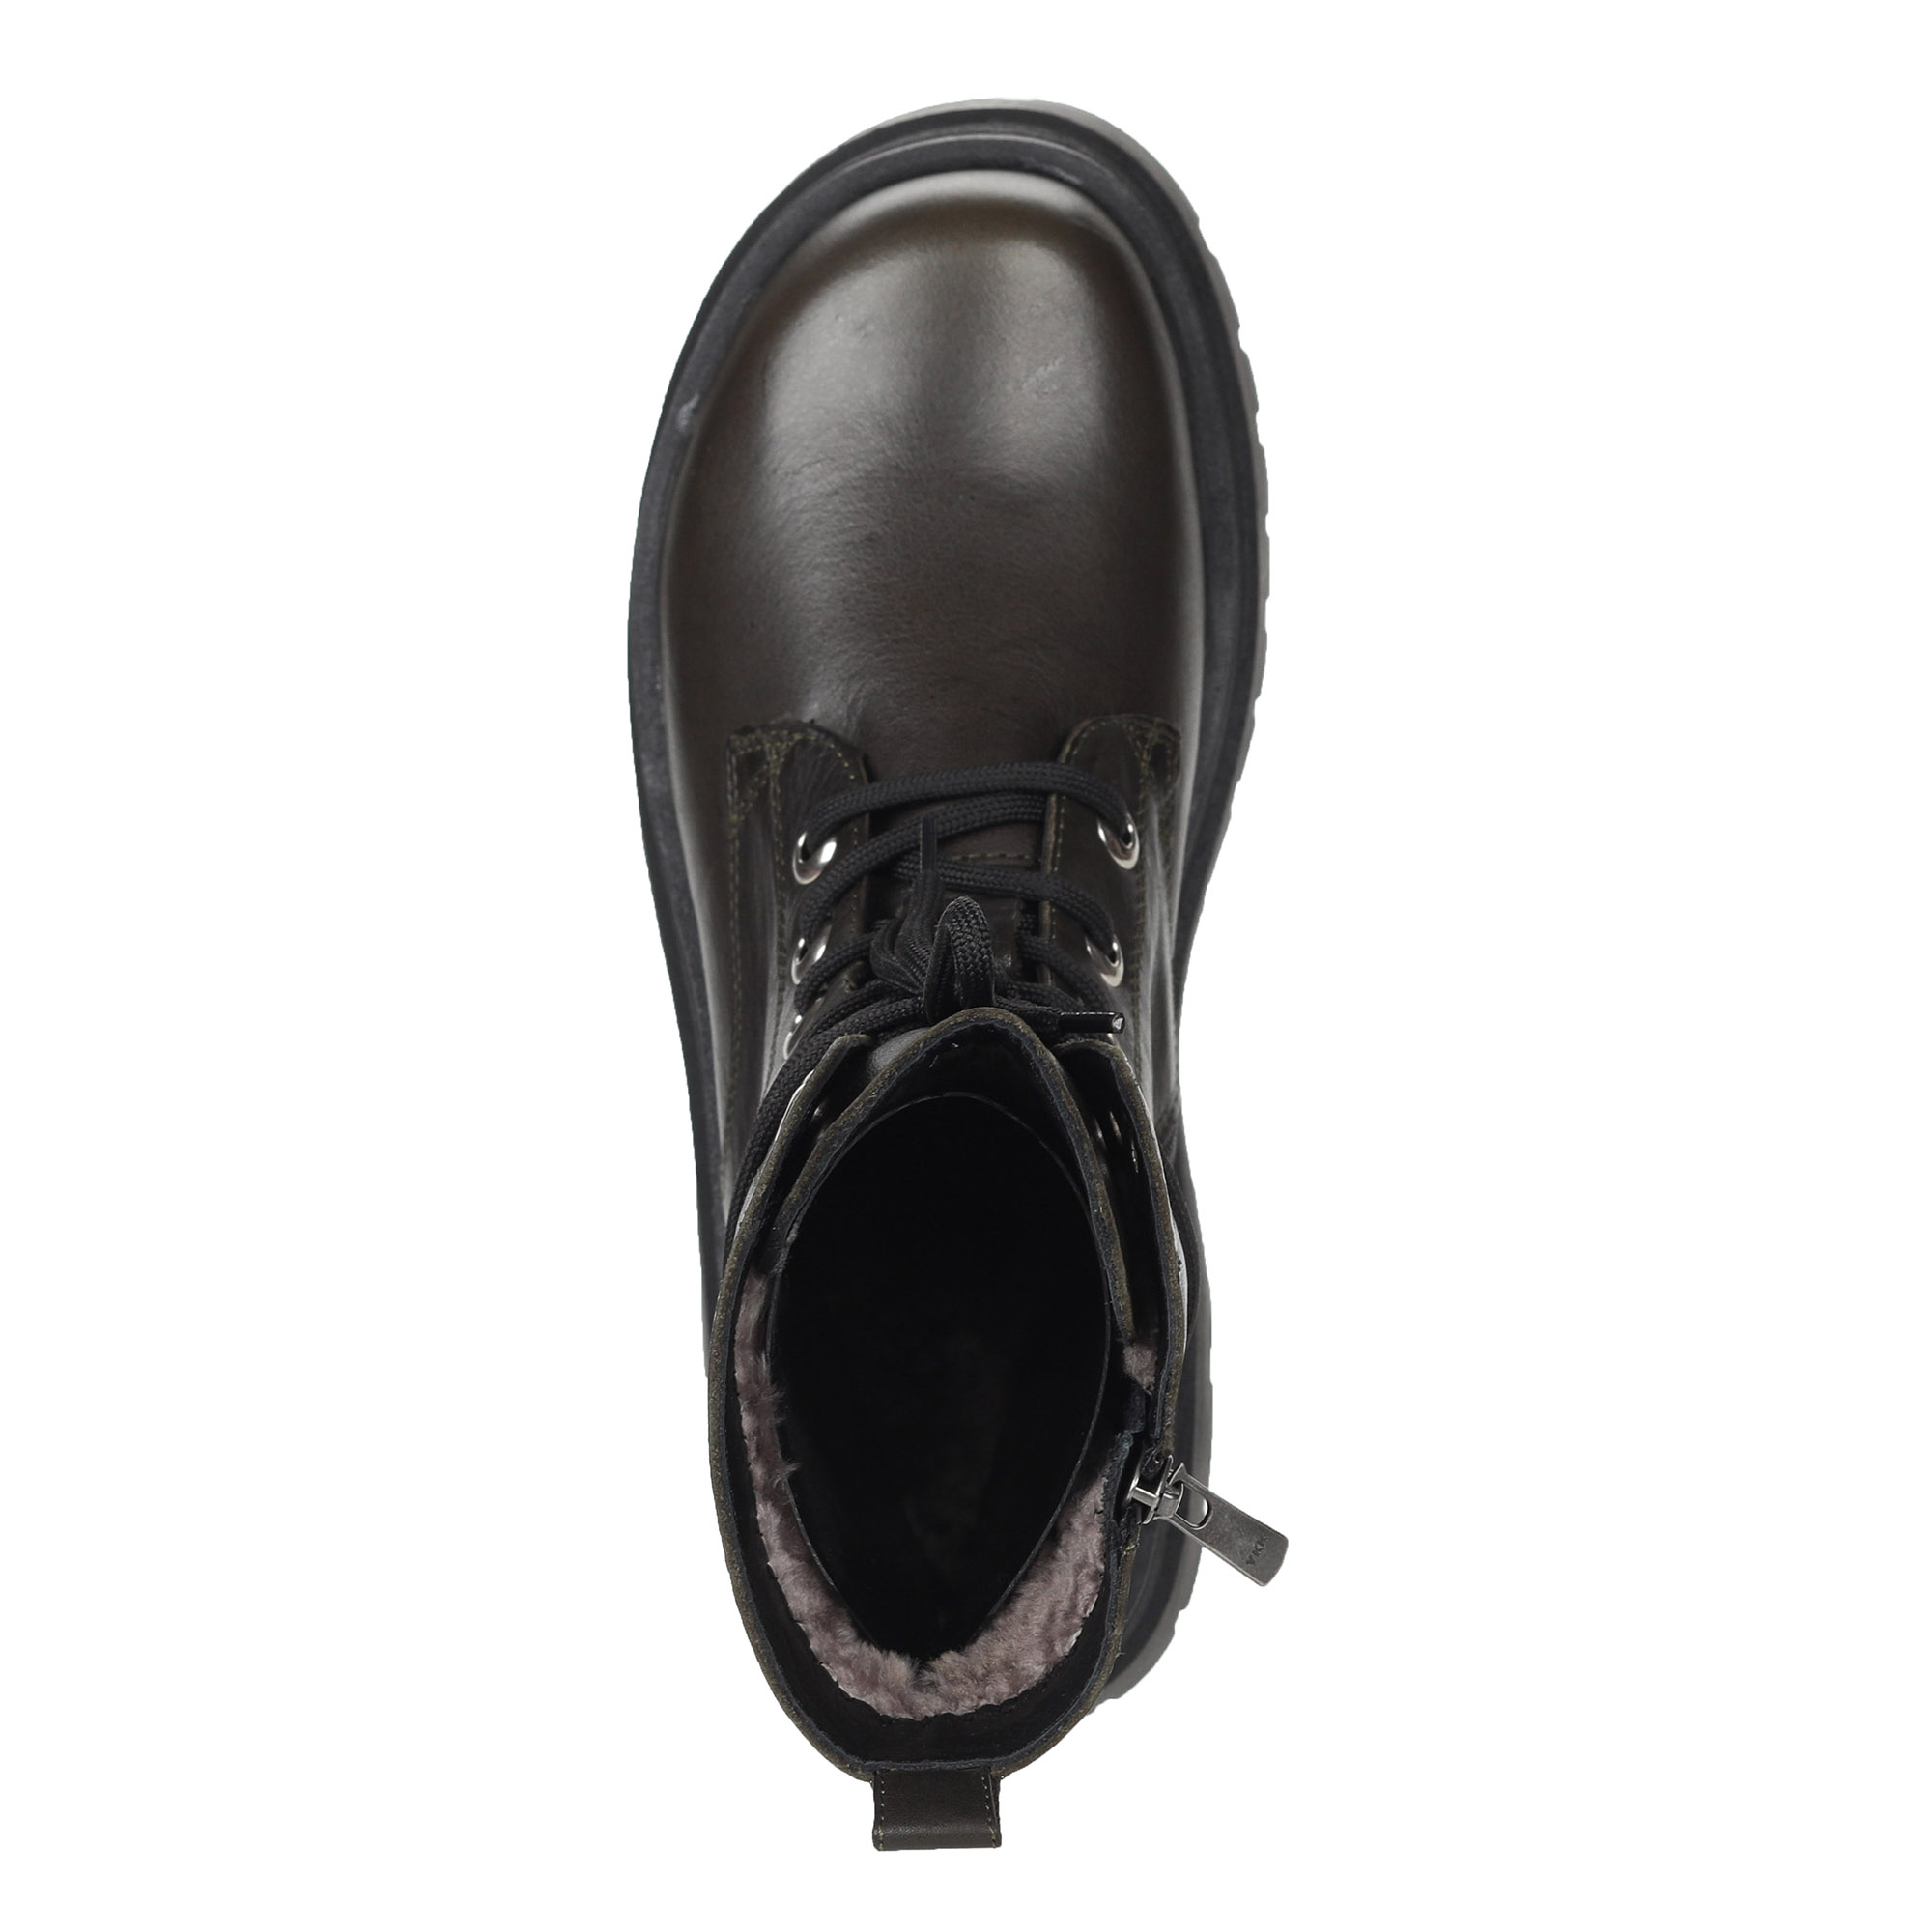 фото Ботинки цвета хаки из кожи на подкладке из натурального меха на шнурках утолщенной подошве corsocomo